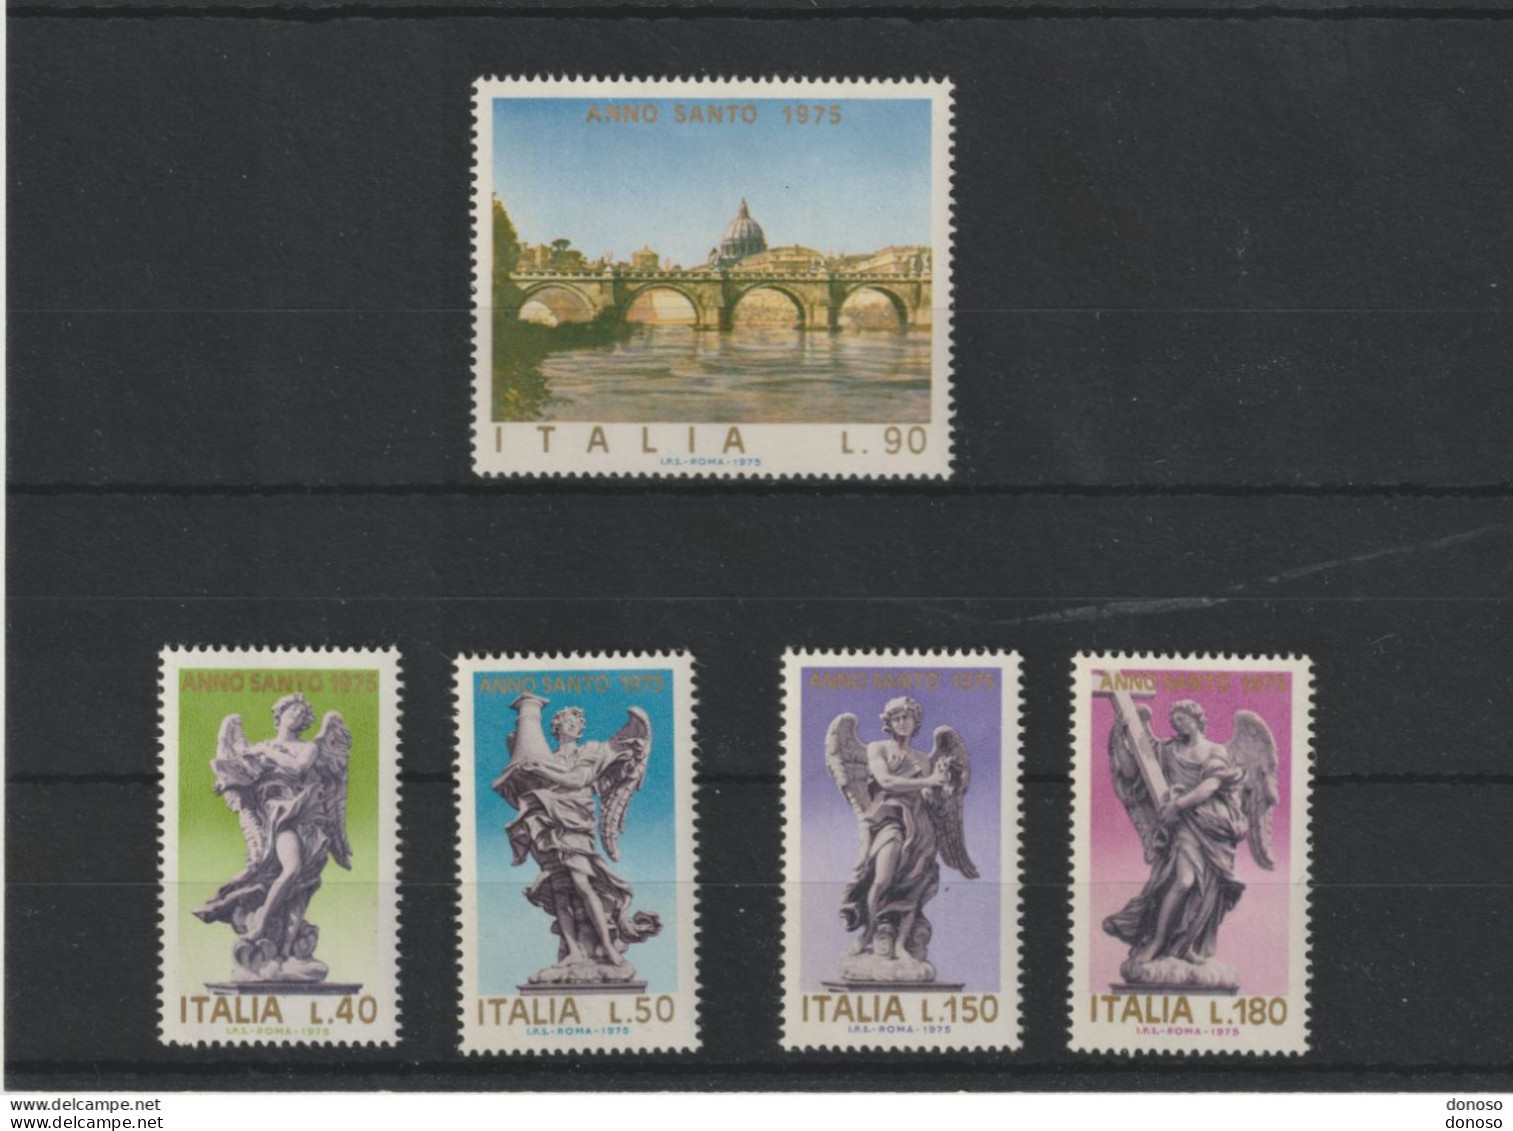 ITALIE 1975 Année Sainte, Pont Saint Ange Et Sculptures D'anges Yvert 1211-1215, Michel 1478-1482 NEUF** MNH - 1971-80: Mint/hinged